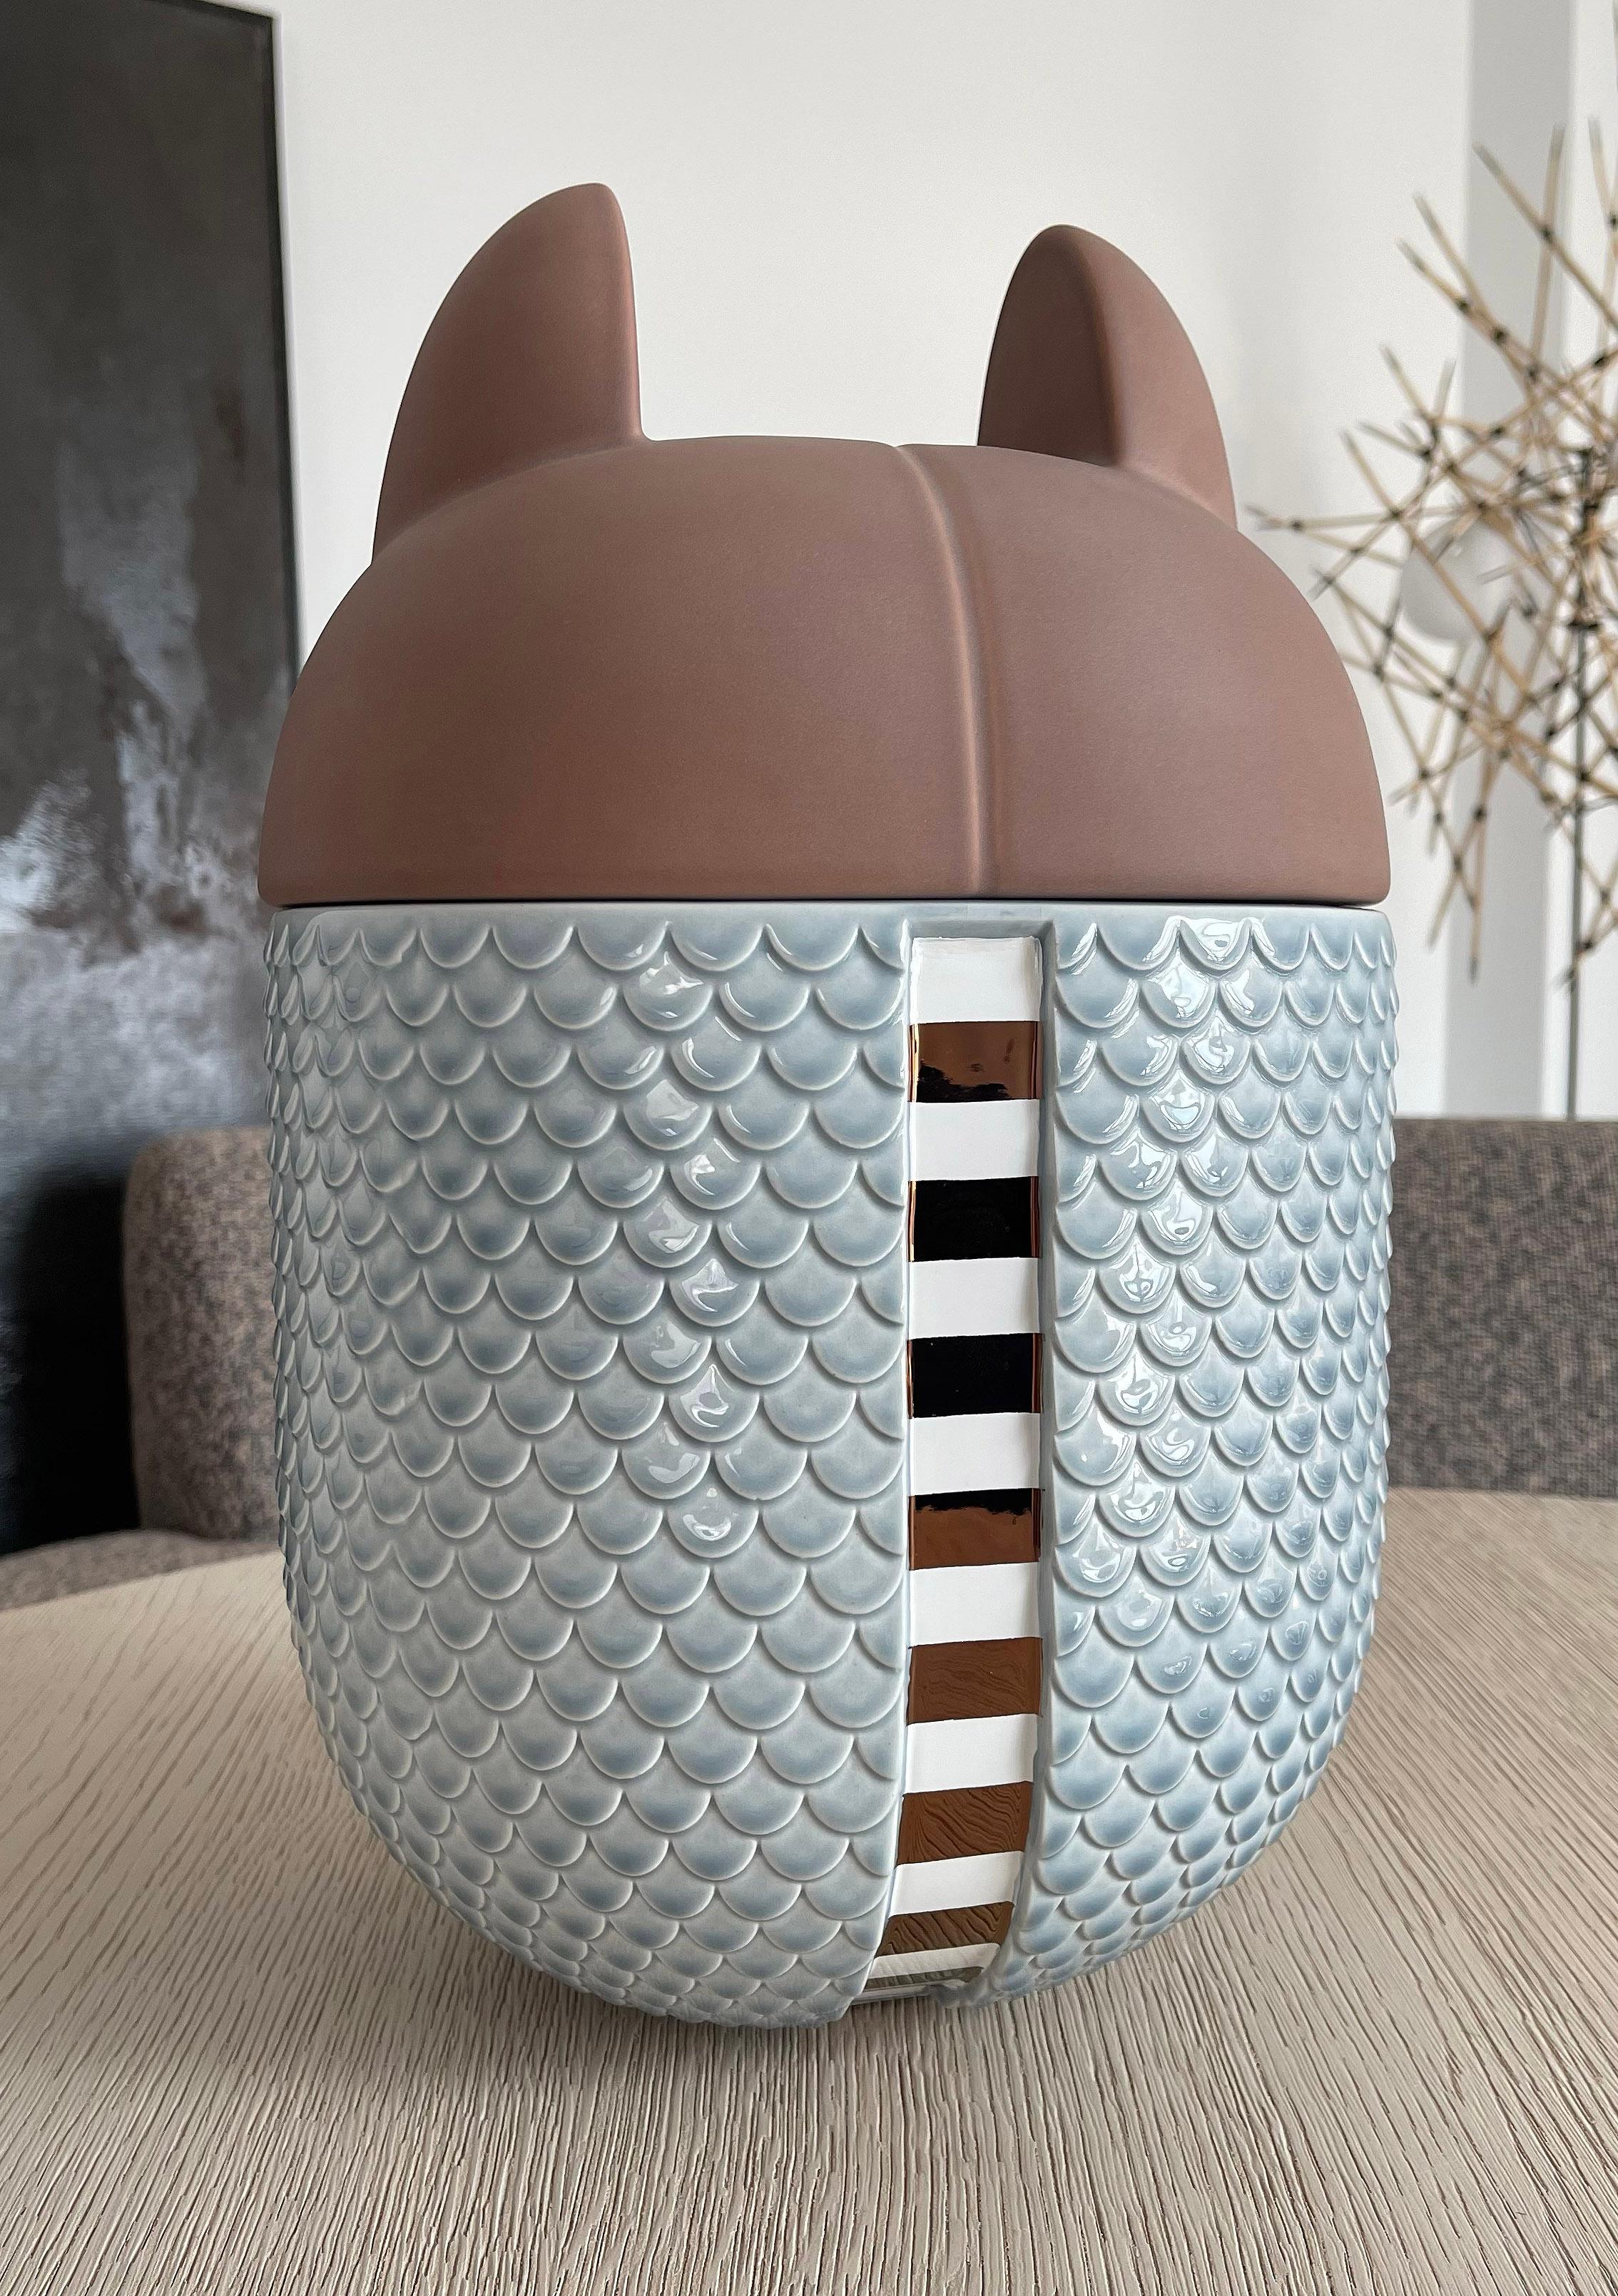 Vase / Behälter aus Keramik - Animalità Khepri von Elena Salmistraro für Bosa

Khepri, entworfen von Elena Salmistraro für Bosa, ist ein gürteltierförmiges Gefäß aus Keramik, das mit Edelmetallen angereichert ist und dessen Schale eine symbolische